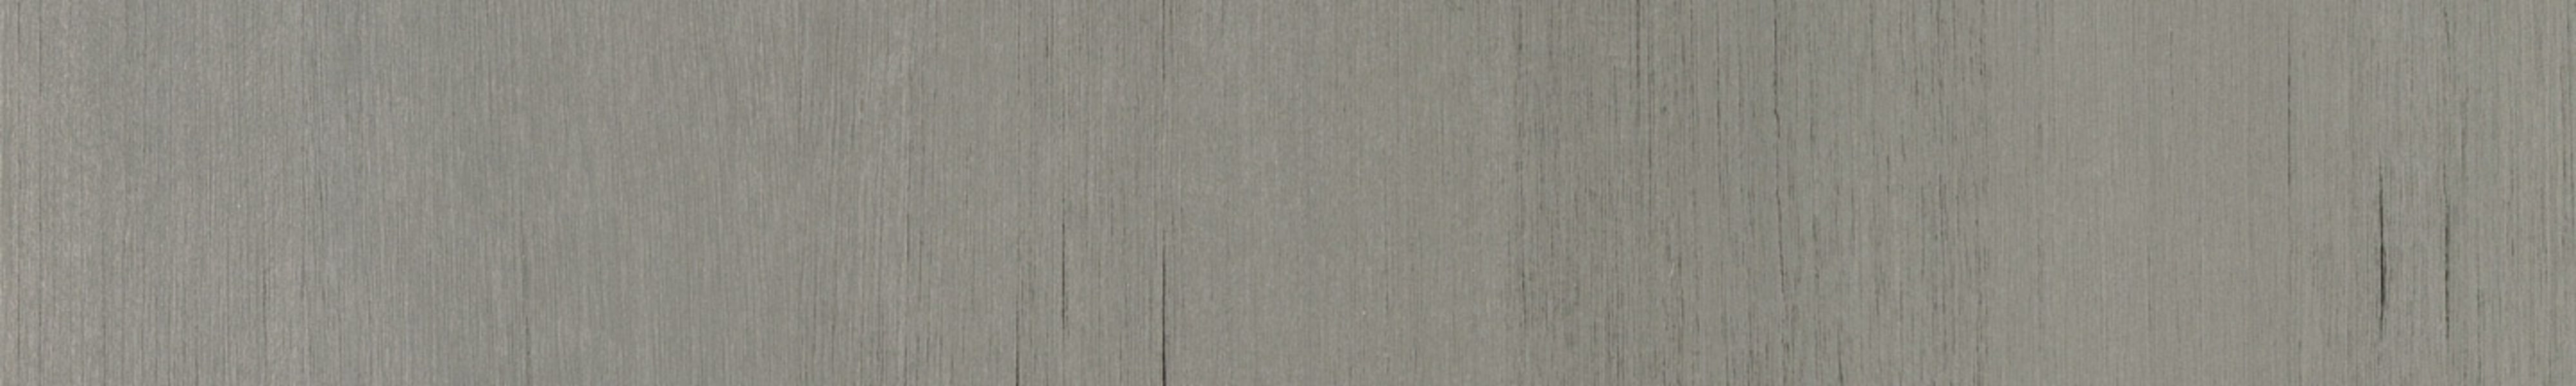 skai® structure Tira metallo grey       L 0,43 1420